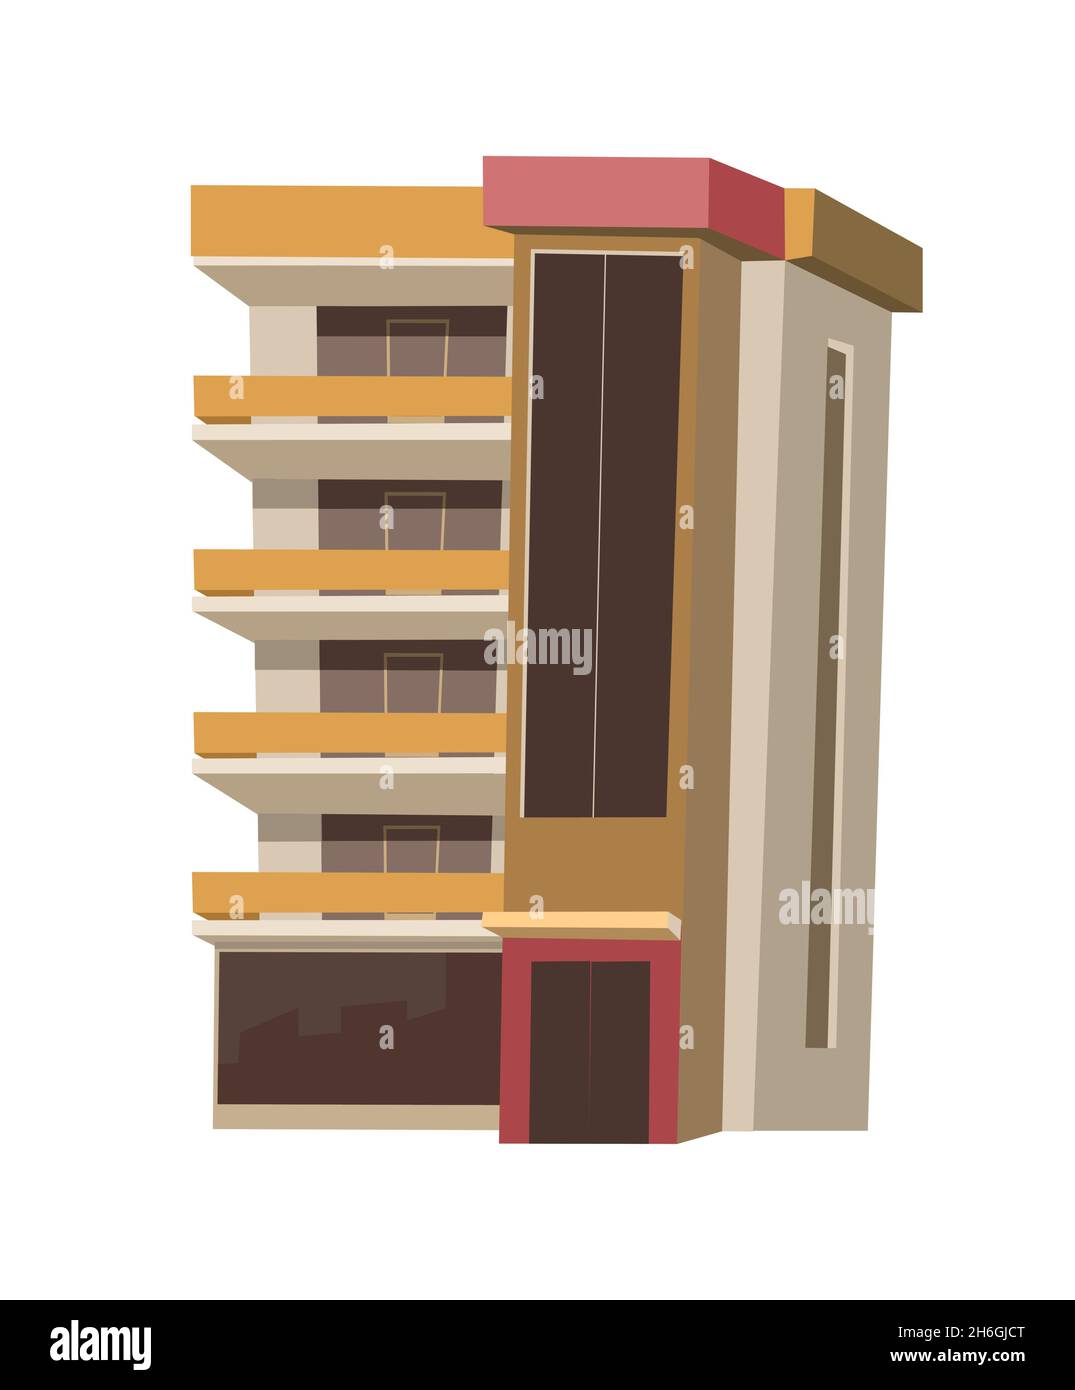 Stadtgebäude. Cartoon-Spaß flach Stil. Isoliert auf weißem Hintergrund. Wohngebäude mit Fenstern und Balkonen. Vektor. Stock Vektor